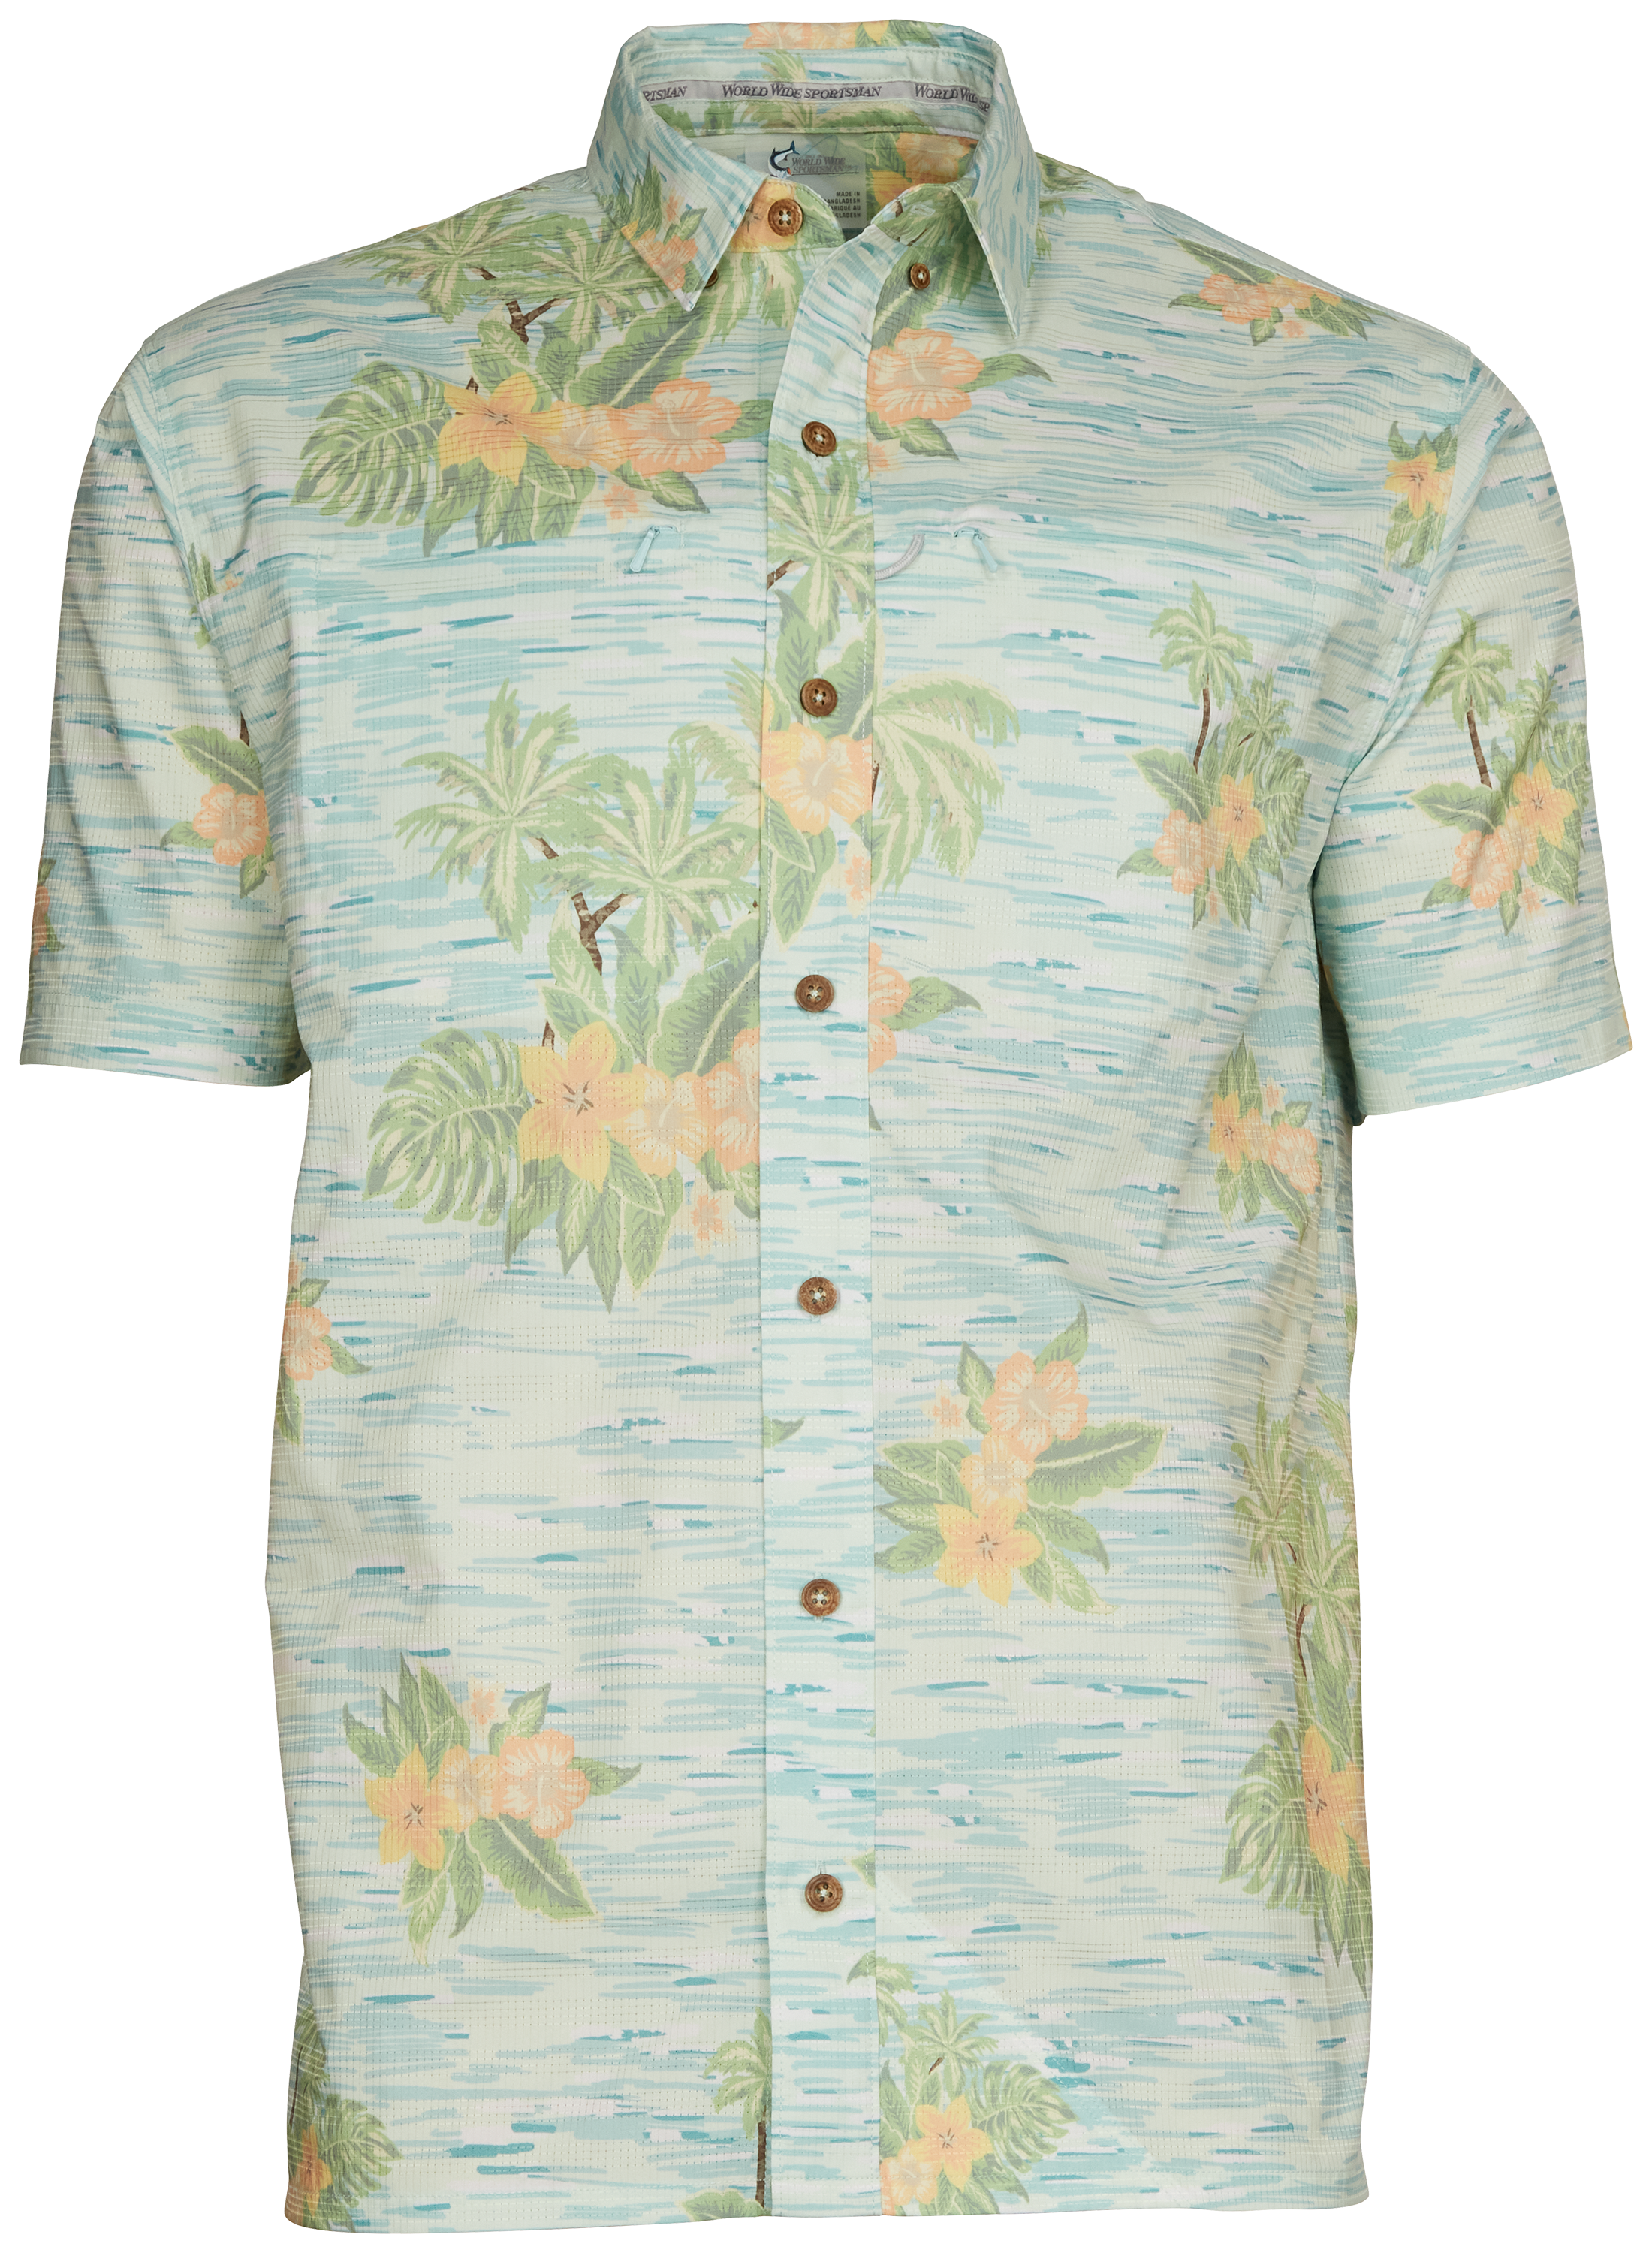 World Wide Sportsman Seacrest Print Short-Sleeve Button-Down Shirt for Men - Blue Hawaiian - 2XL